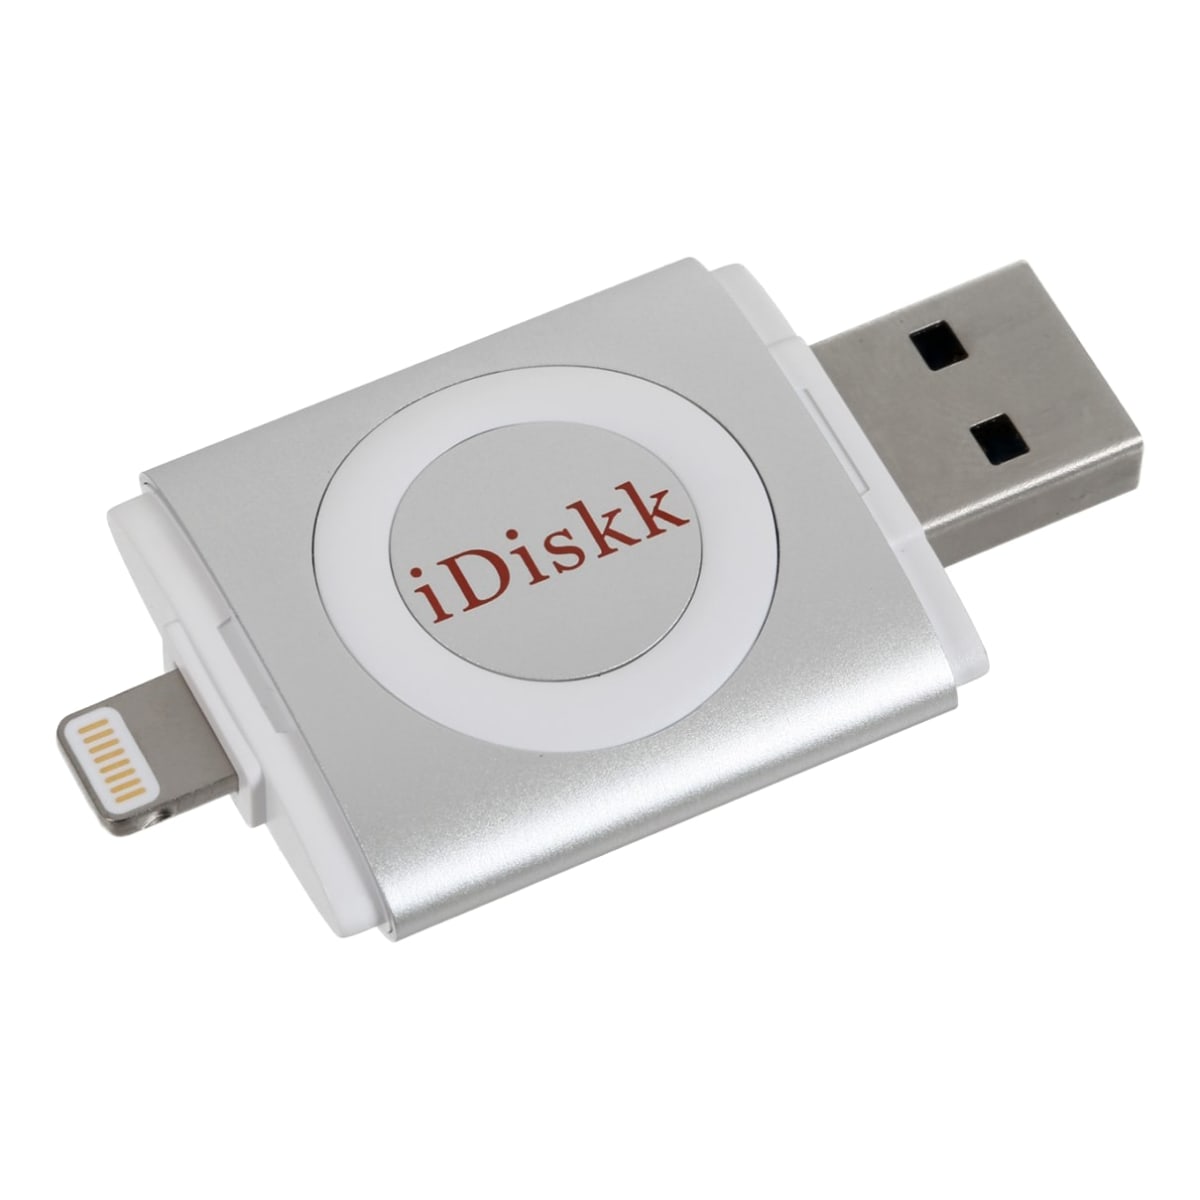 iDiskk U003 16GB lightning / USB  muistitikku   verkkokauppa